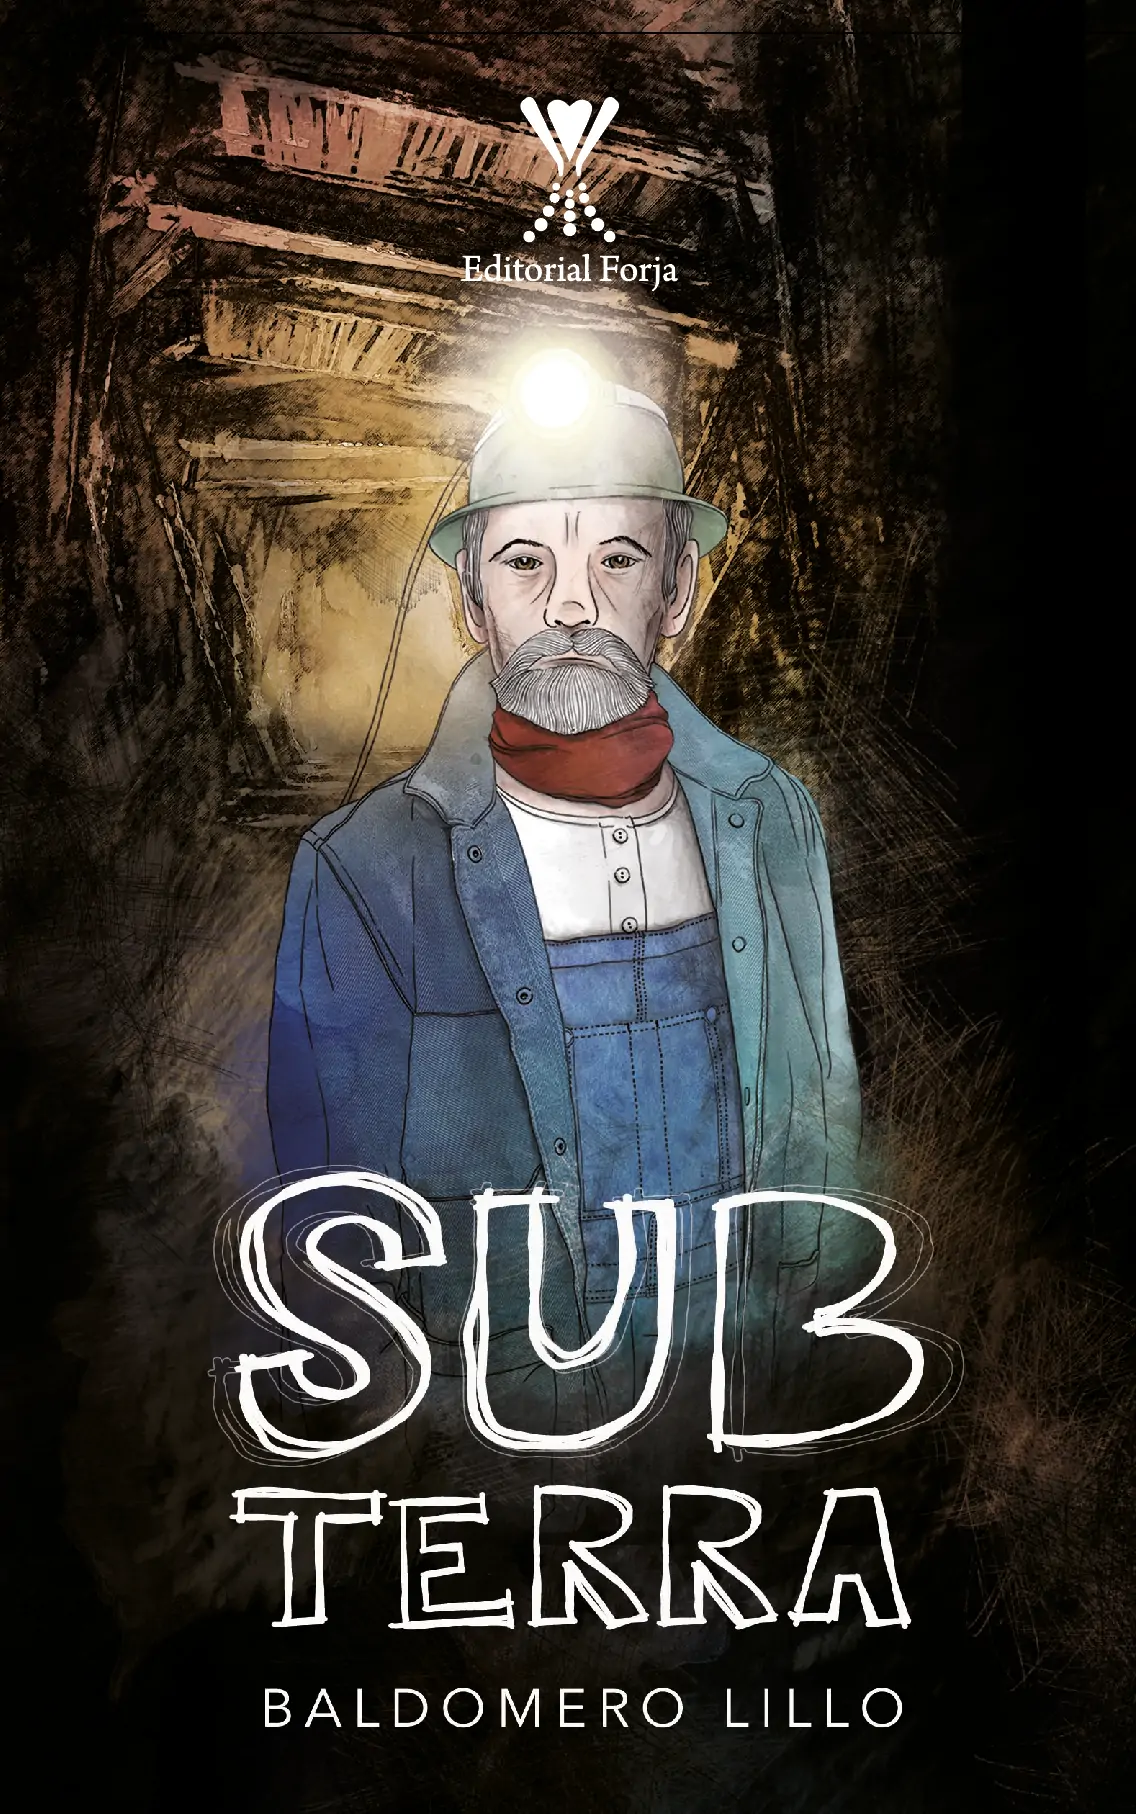 Subterra - Editorial Forja